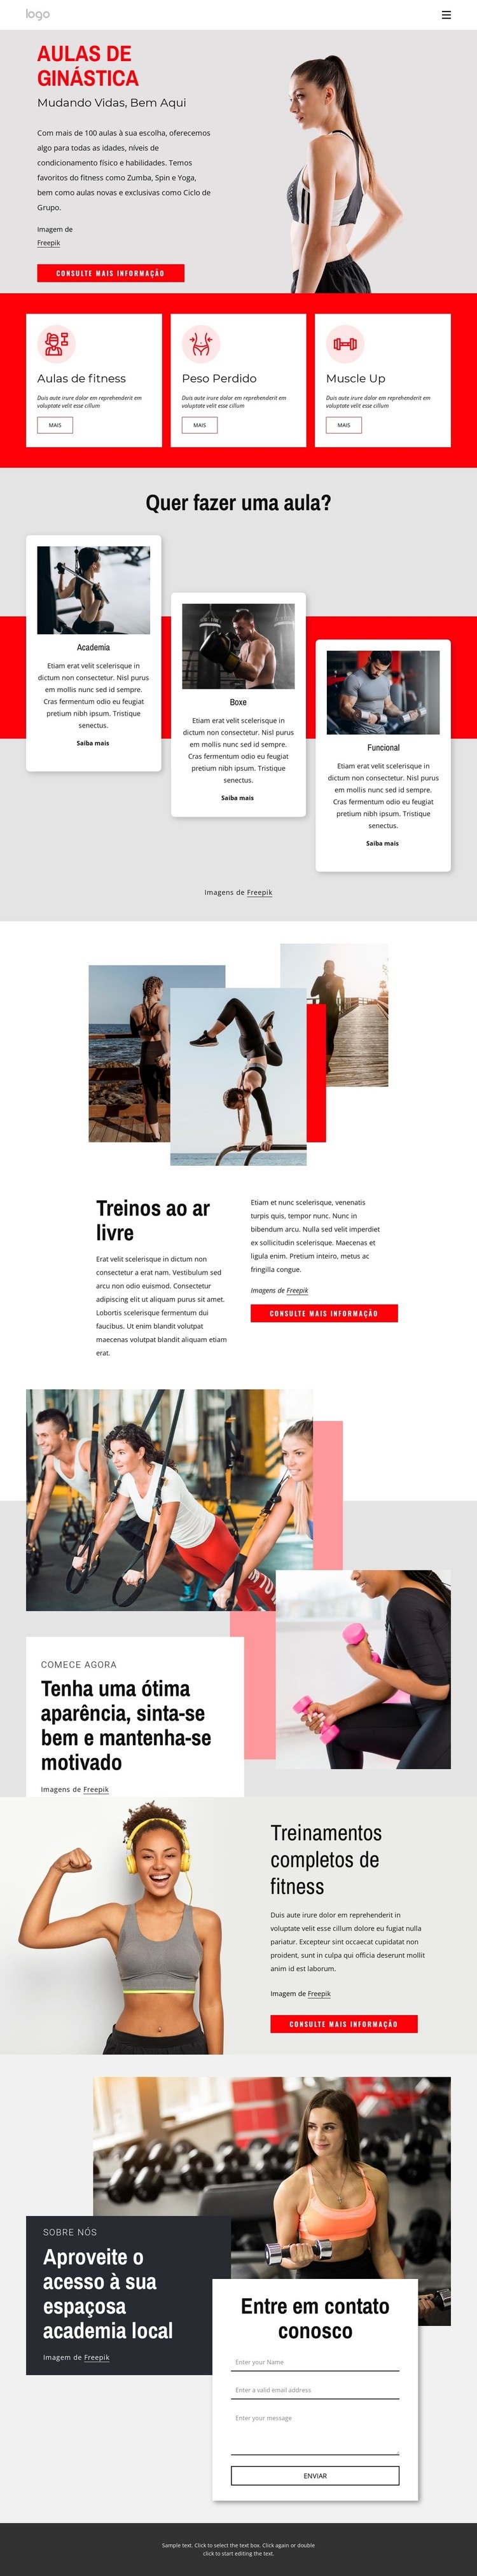 Ginásio de fitness completo Design do site